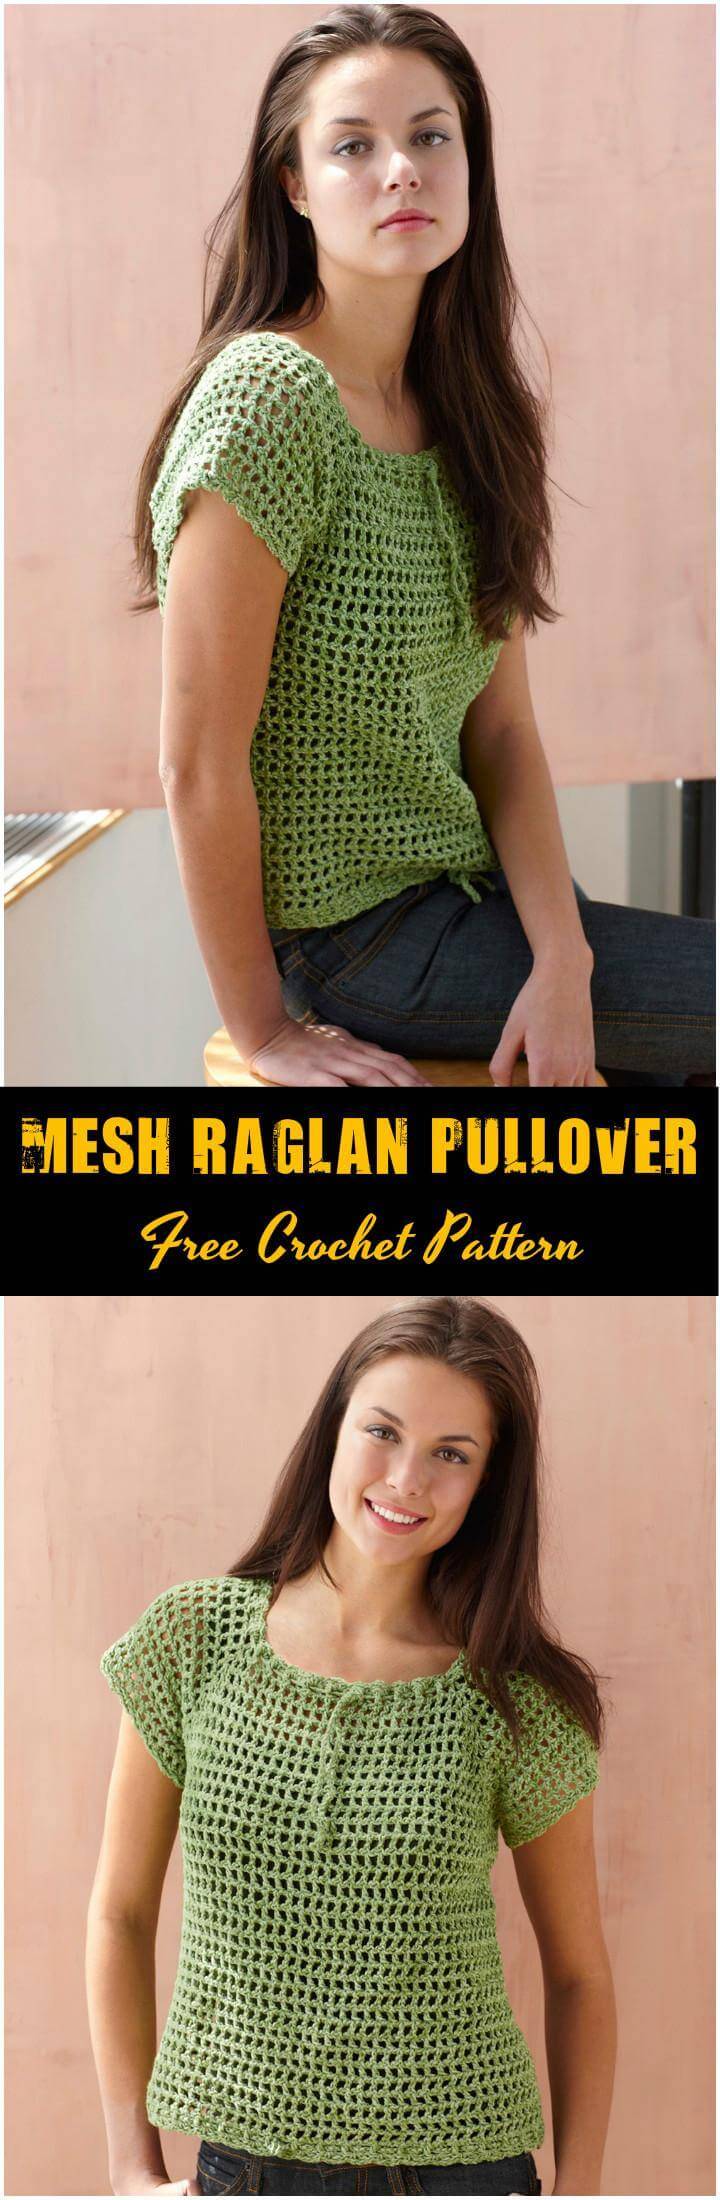 Mesh Raglan Pullover Free Crochet Pattern